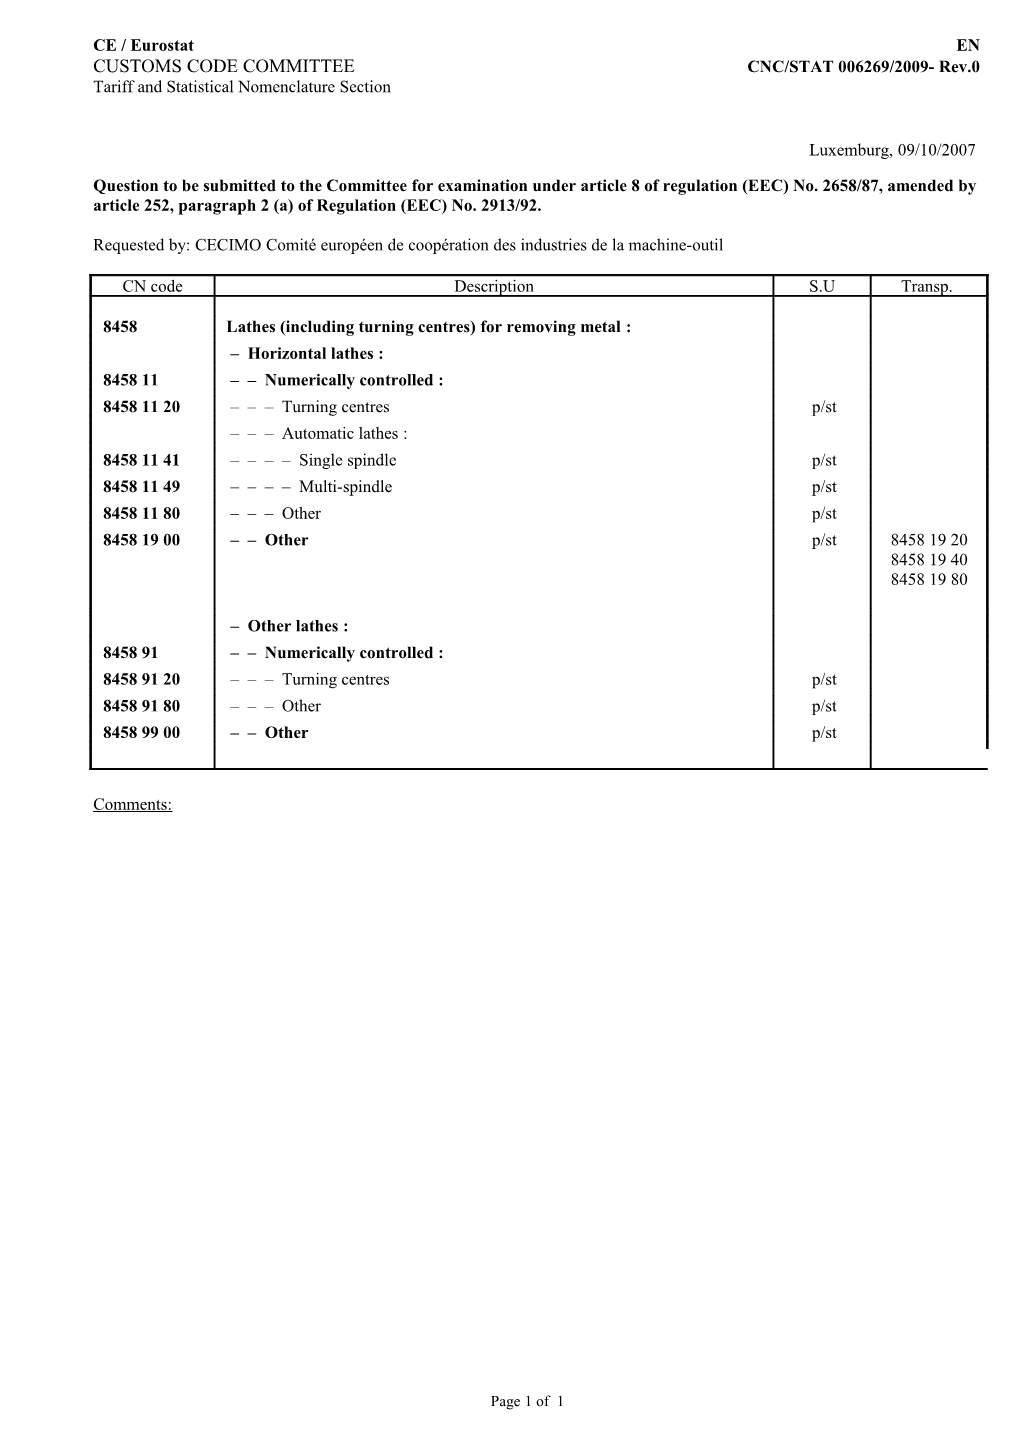 CUSTOMS CODE COMMITTEE CNC/STAT 006269/2009- Rev.0